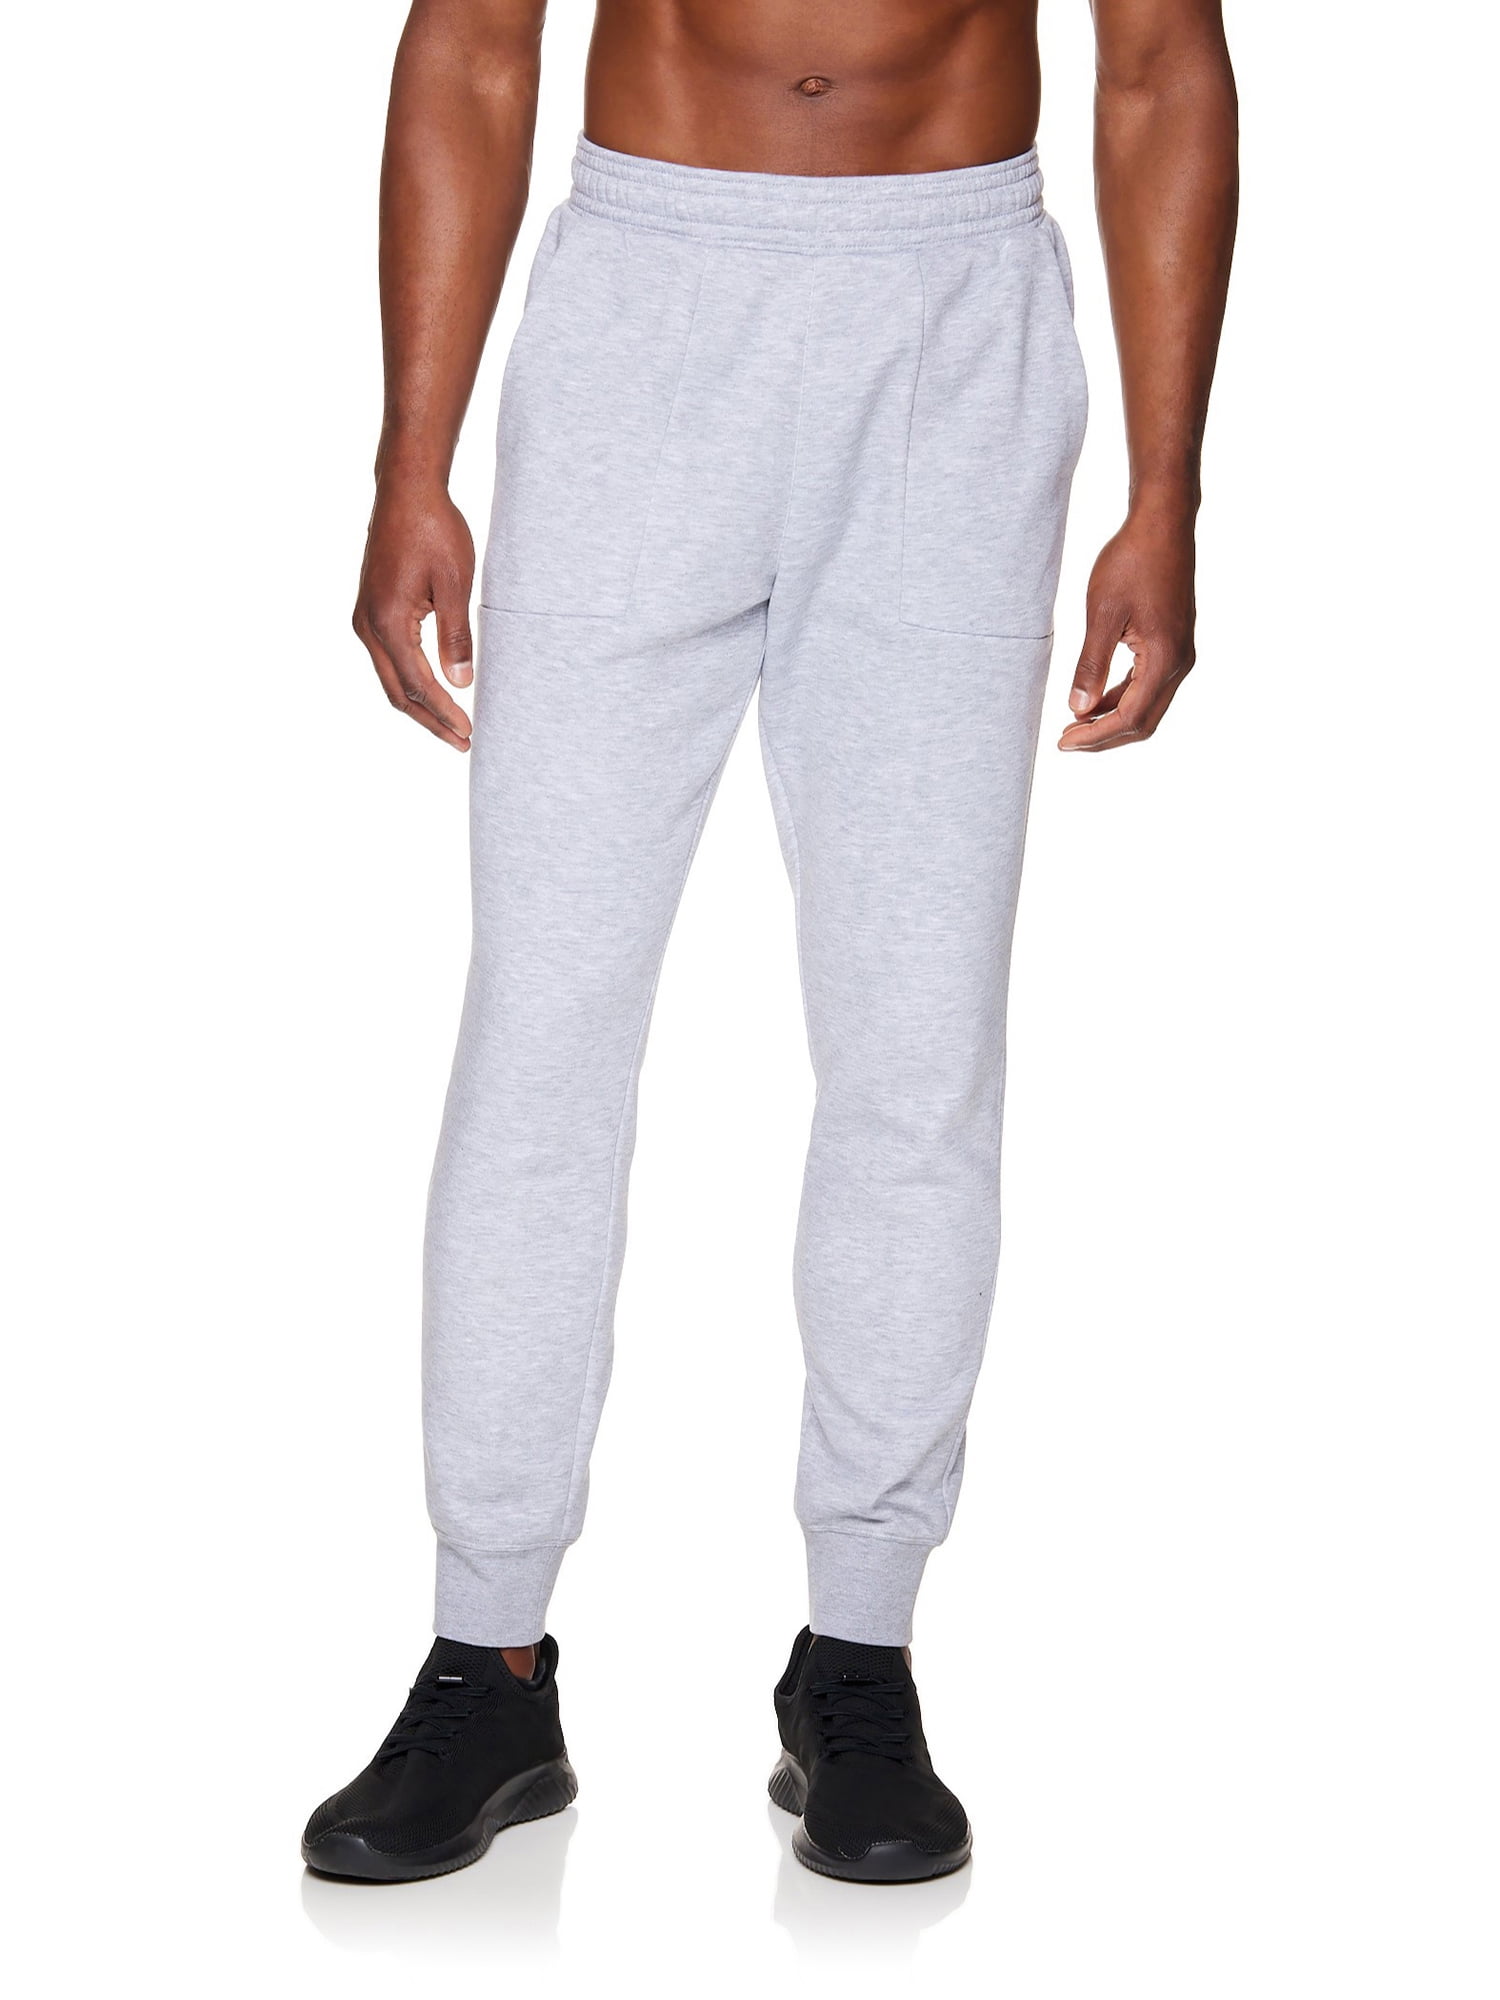 Gaiam Men's Comfort Joggers, Sizes S-XL - Walmart.com